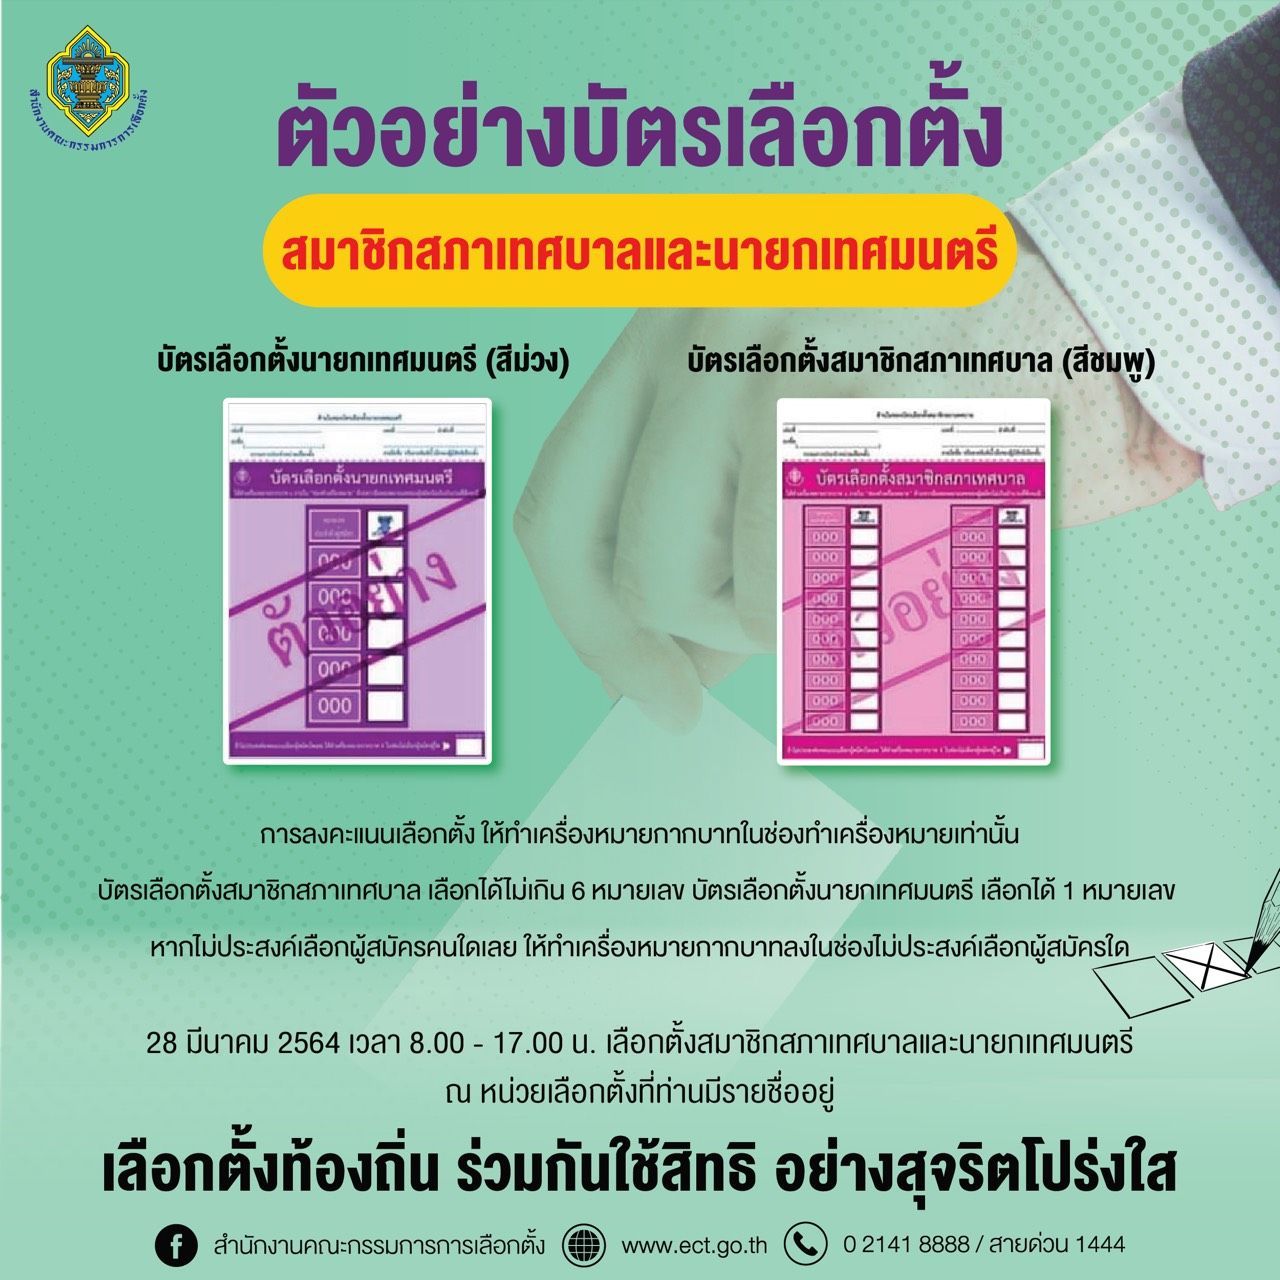 เปิดตัวอย่างบัตรเลือกตั้งเทศบาล 28 มีนาคม “สีม่วง-ชมพู” ใช้อย่างไร